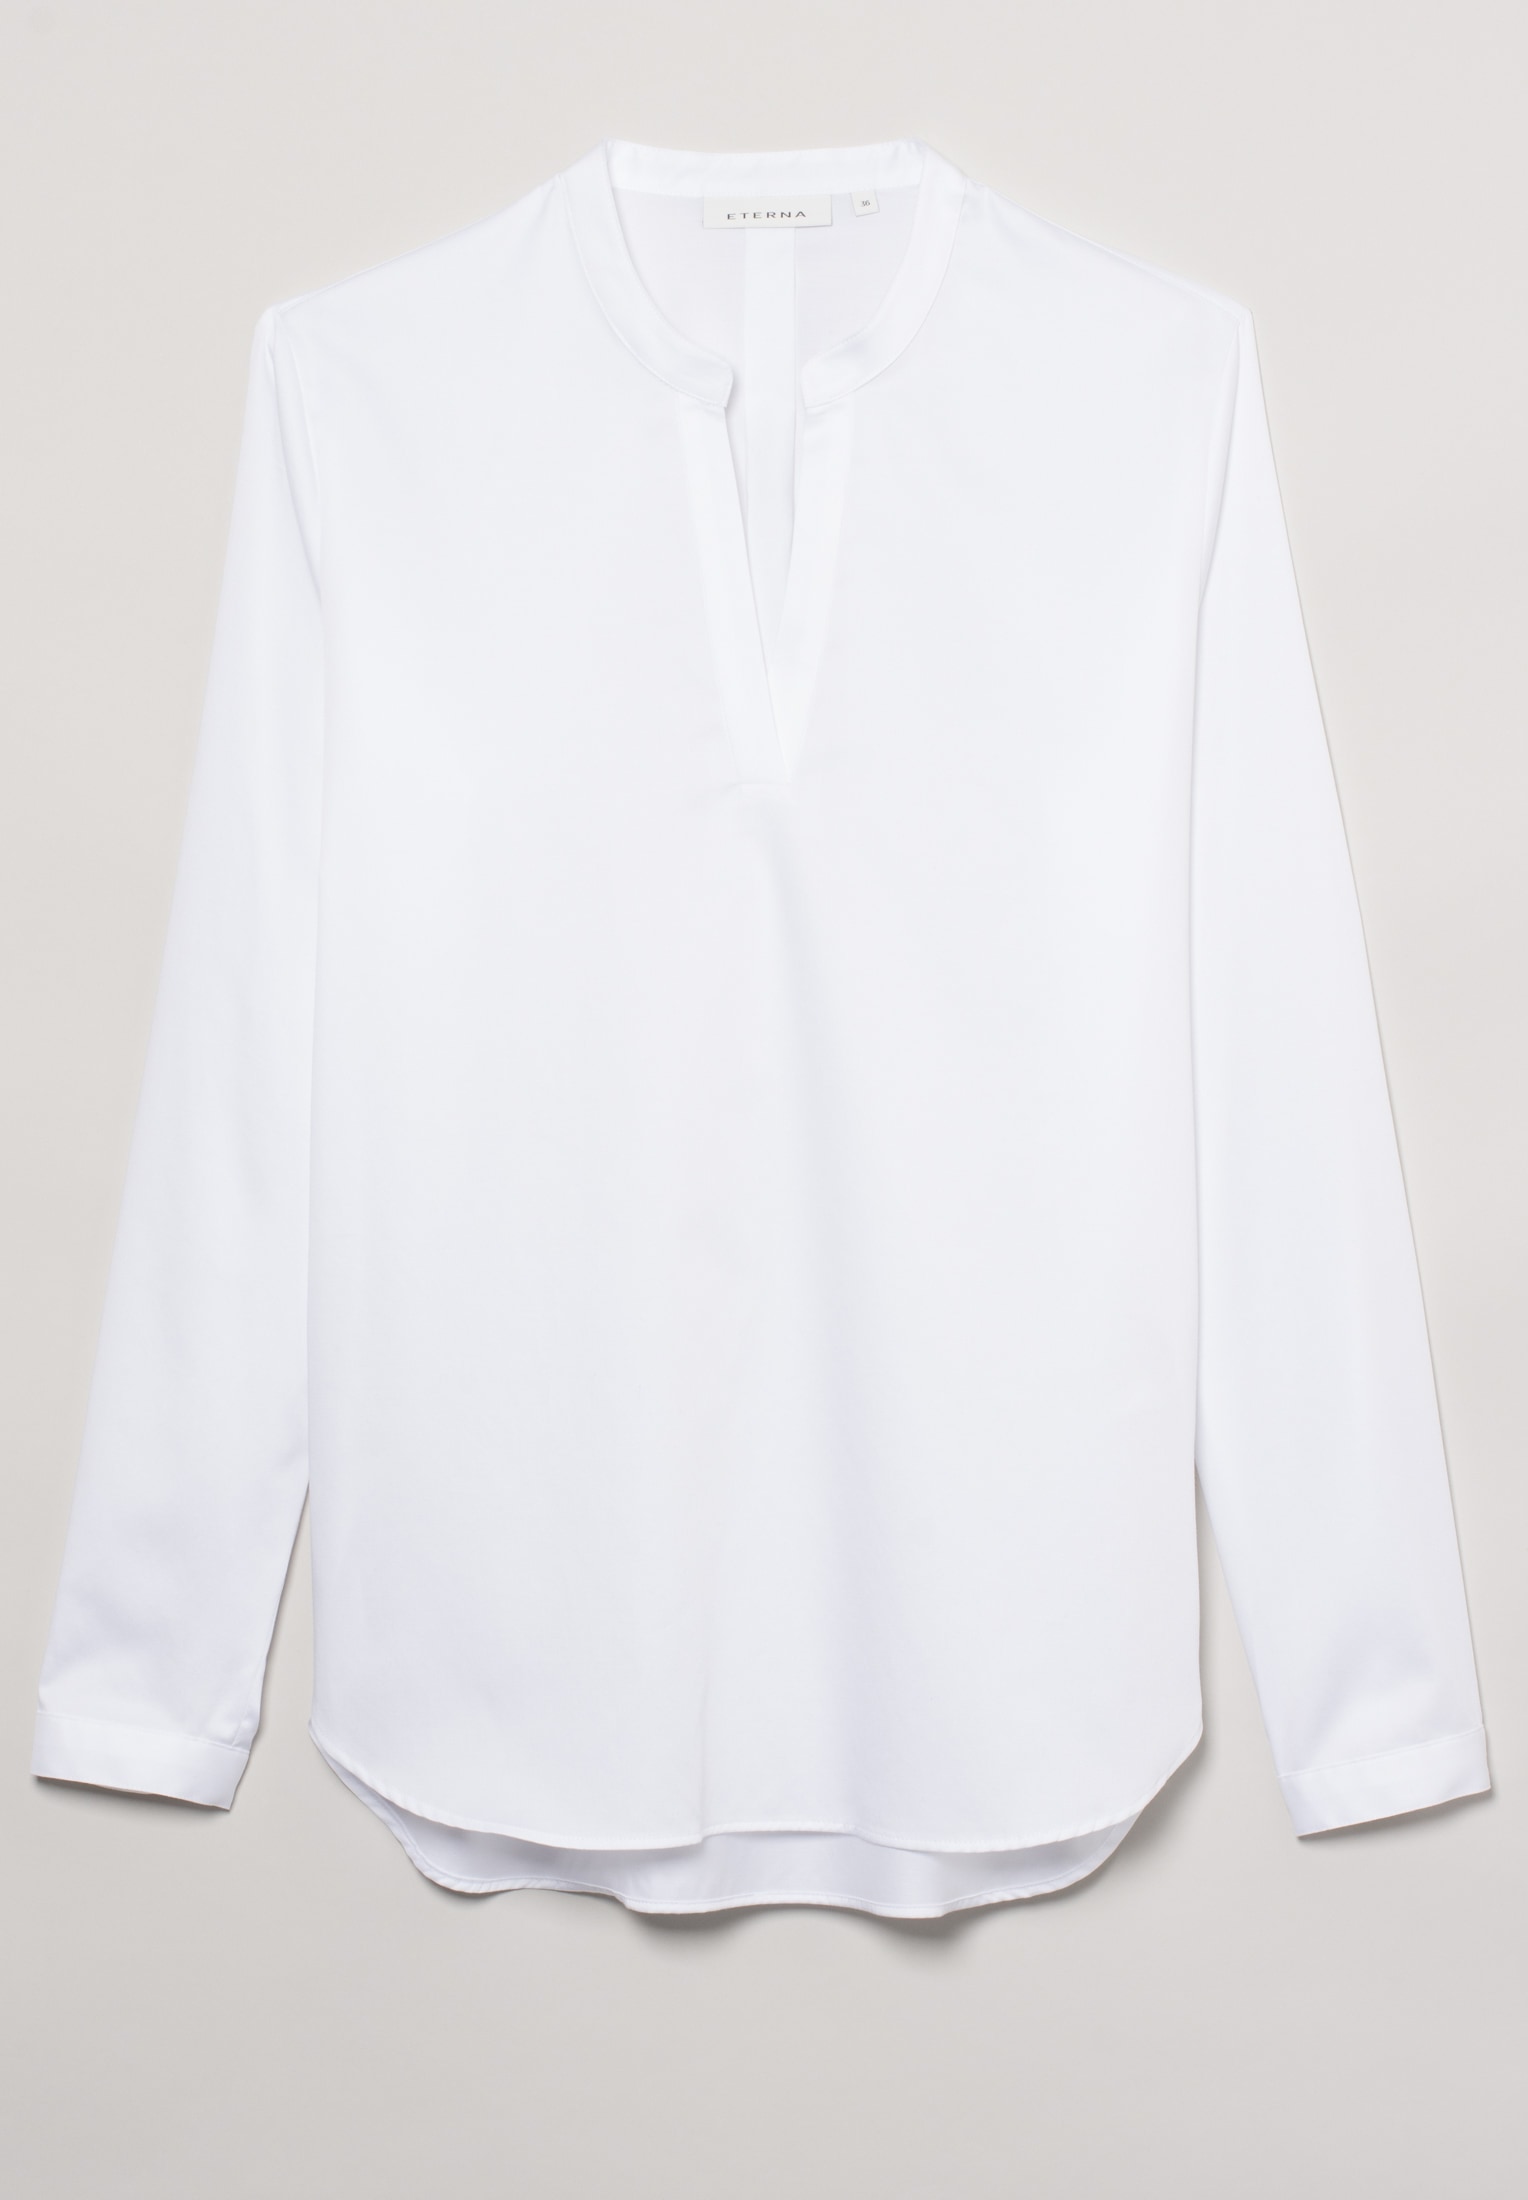 Satin Shirt Bluse in weiß | | Langarm 2BL00618-00-01-44-1/1 unifarben weiß 44 | 